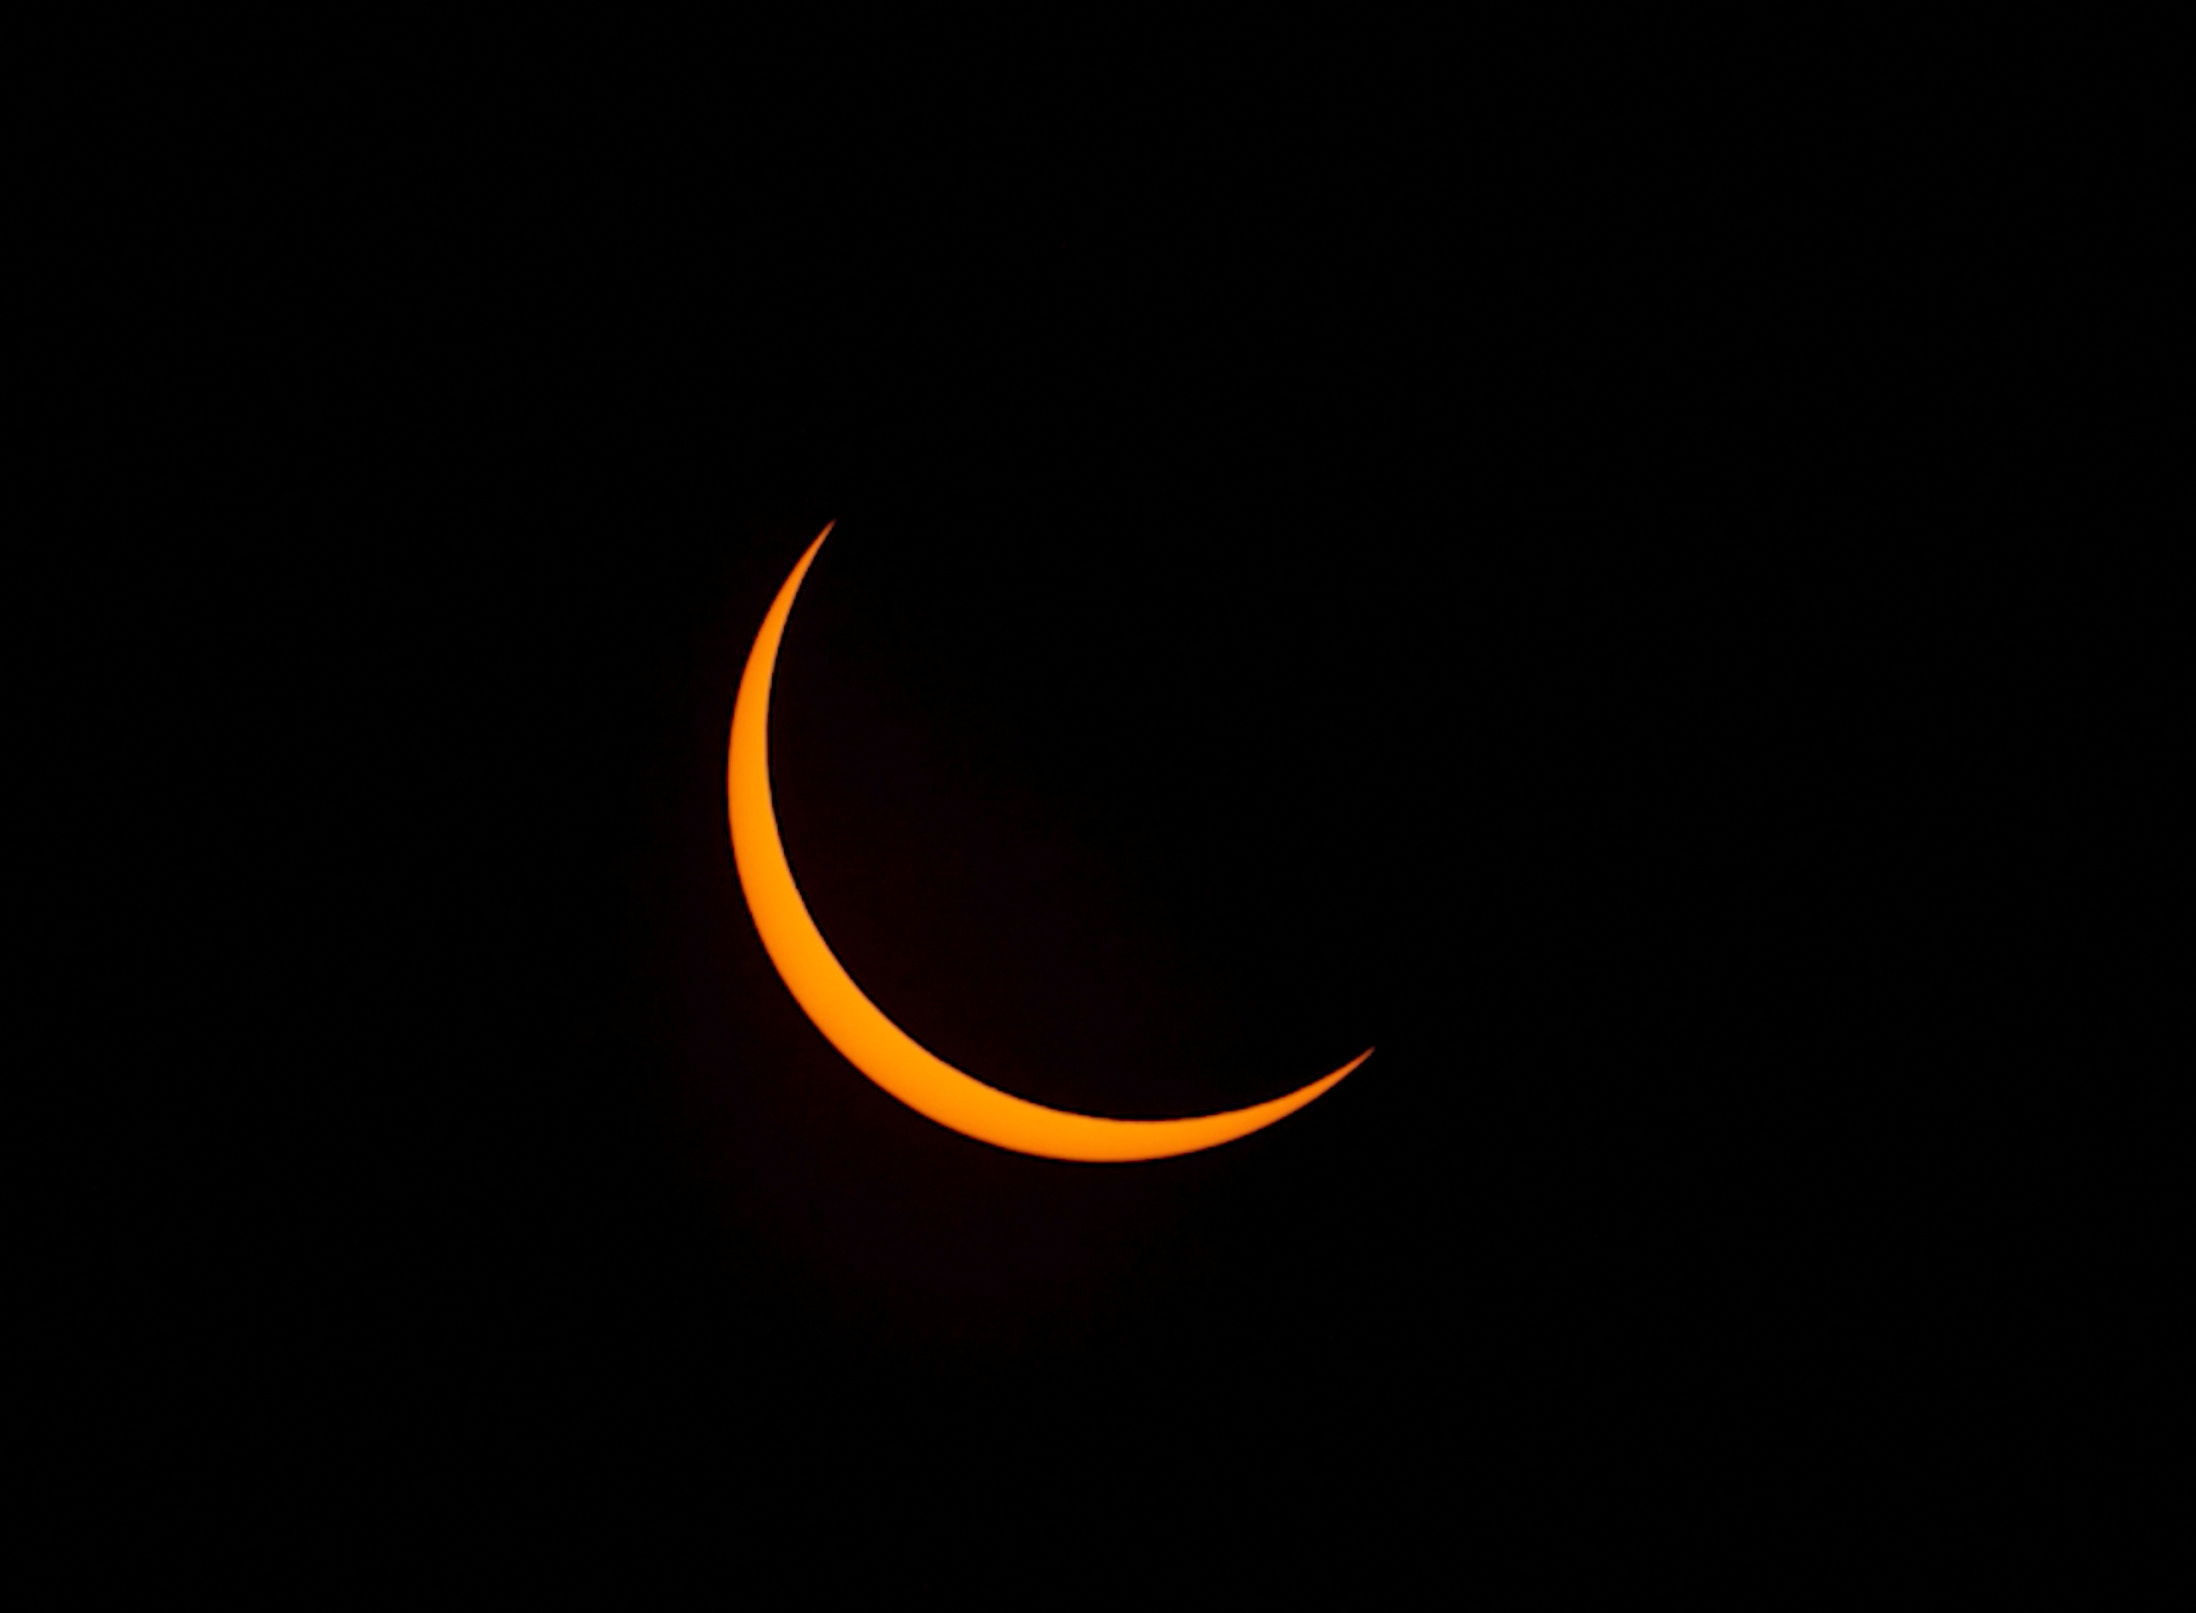 Este tipo de eclipse cambia de eclipse solar total a anular (en forma de anillo) a medida que la sombra de la luna se mueve sobre la superficie de la Tierra. (AAP Image/Centre for Radio Astronomy Research/Michael Goh via REUTERS )